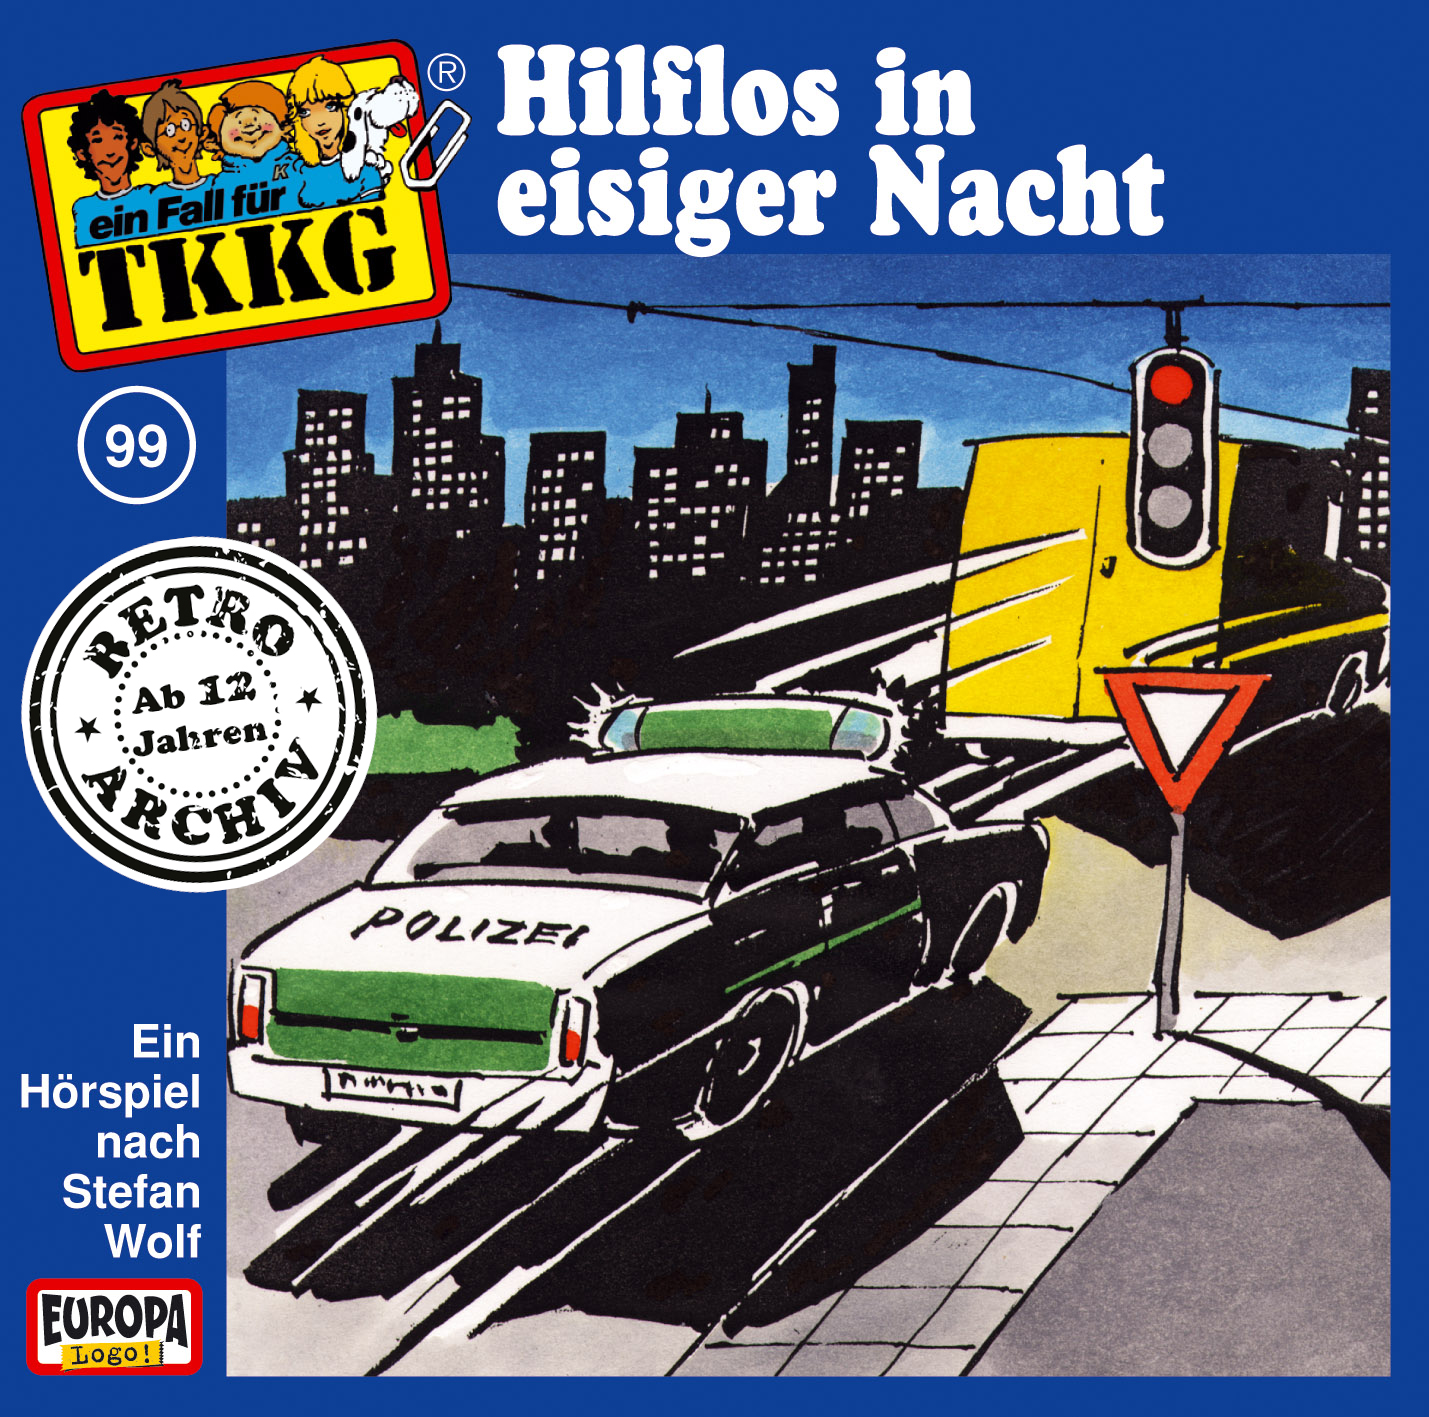 TKKG Retro-Archiv: Hilflos in eisiger Nacht